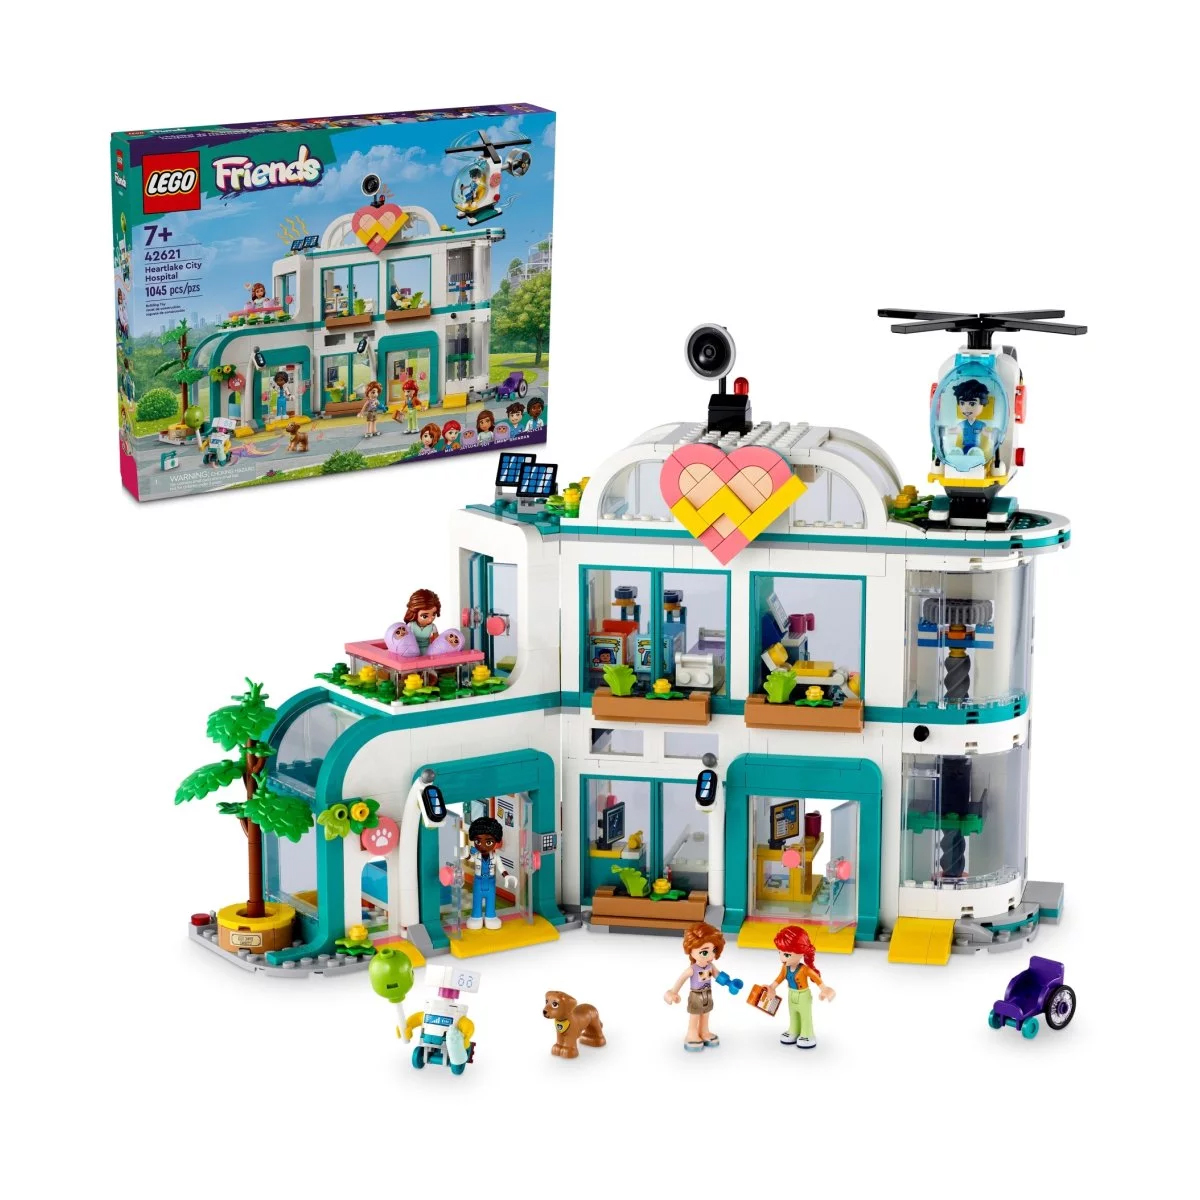 ролевые игры kid s concept игрушечный набор для выпечки Конструктор Lego Friends Heartlake City Hospital 42621, 1045 деталей